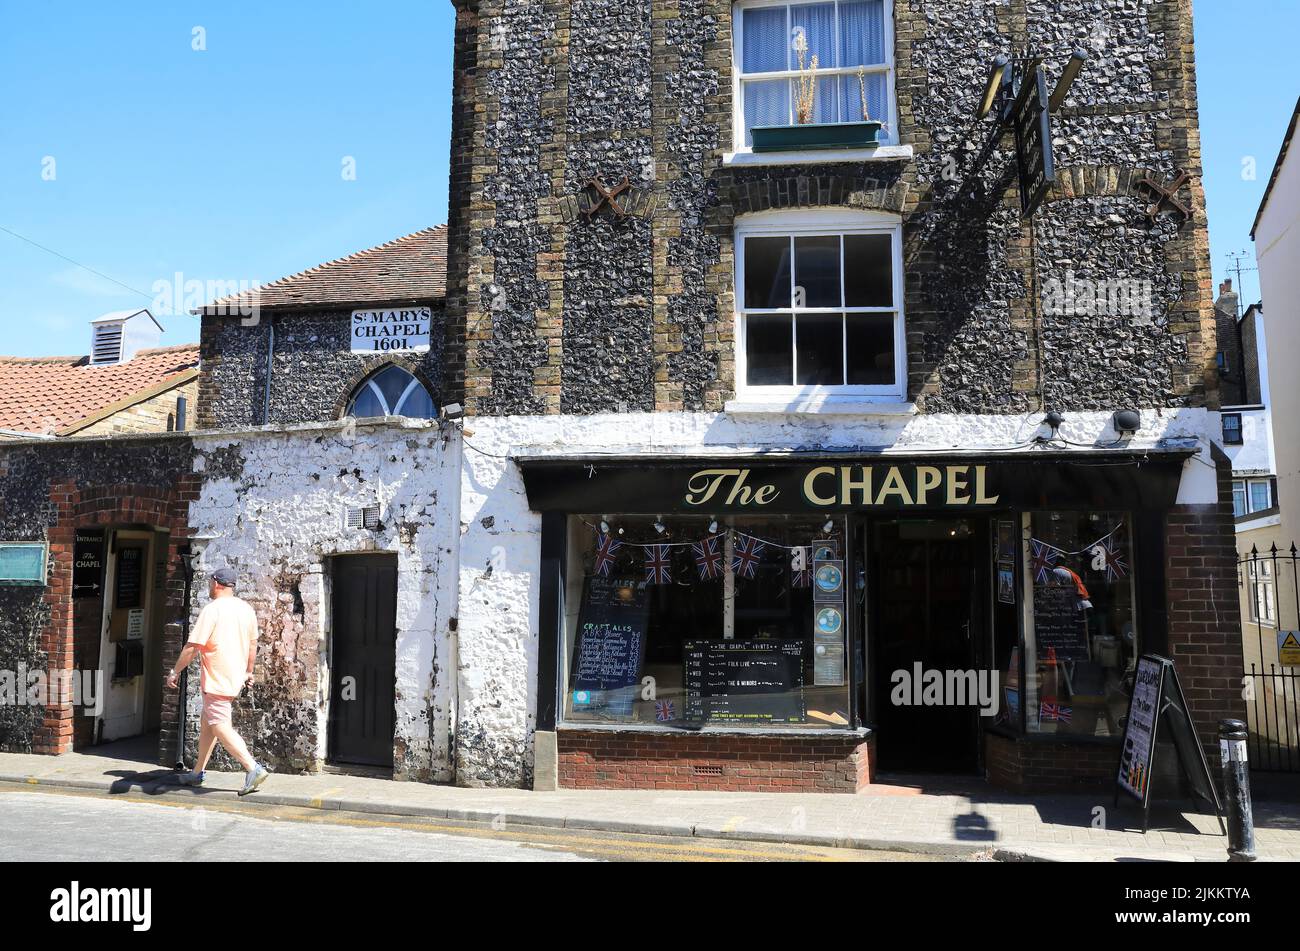 Extravagante pub y librería, The Chapel, donde el bar es un altar, situado en el grado 2 de la Capilla de Santa María, en la calle Albion, en Broadstairs, Kent Foto de stock